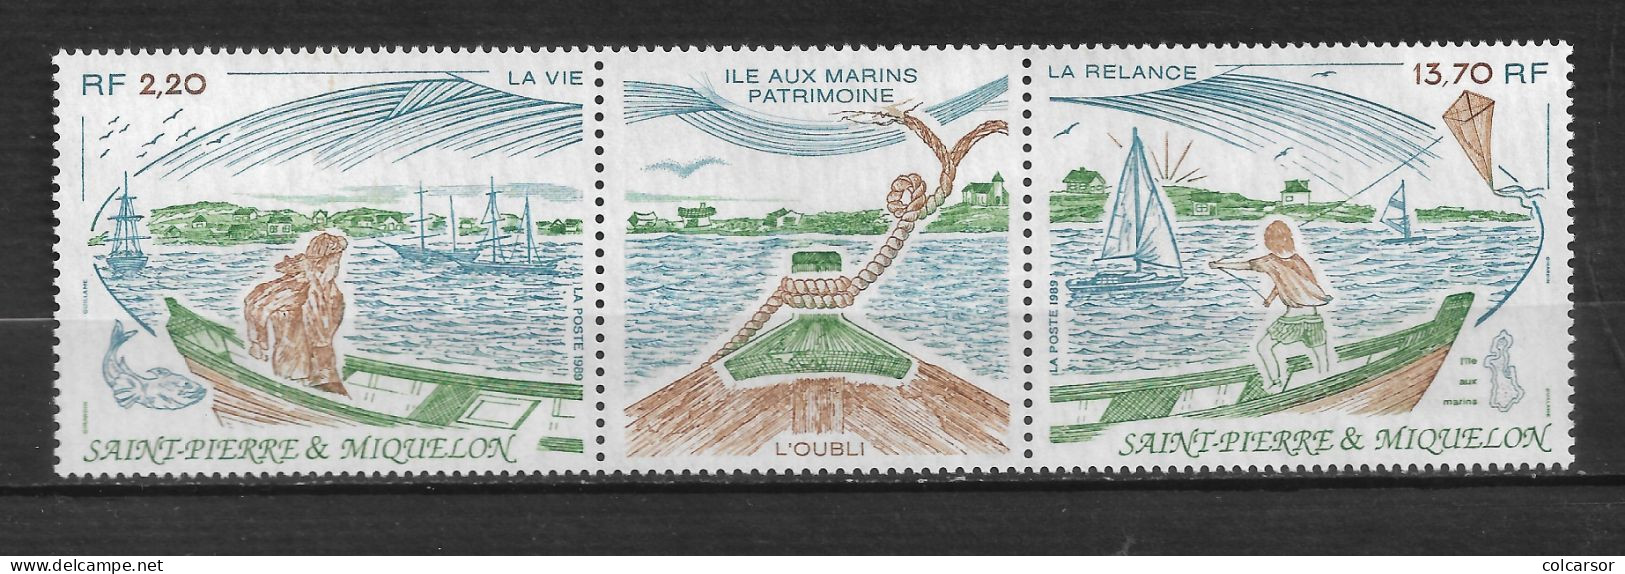 SAINT PIERRE ET MIQUELON N°   509A  " L'ÎLE AUX MARINS " - Unused Stamps